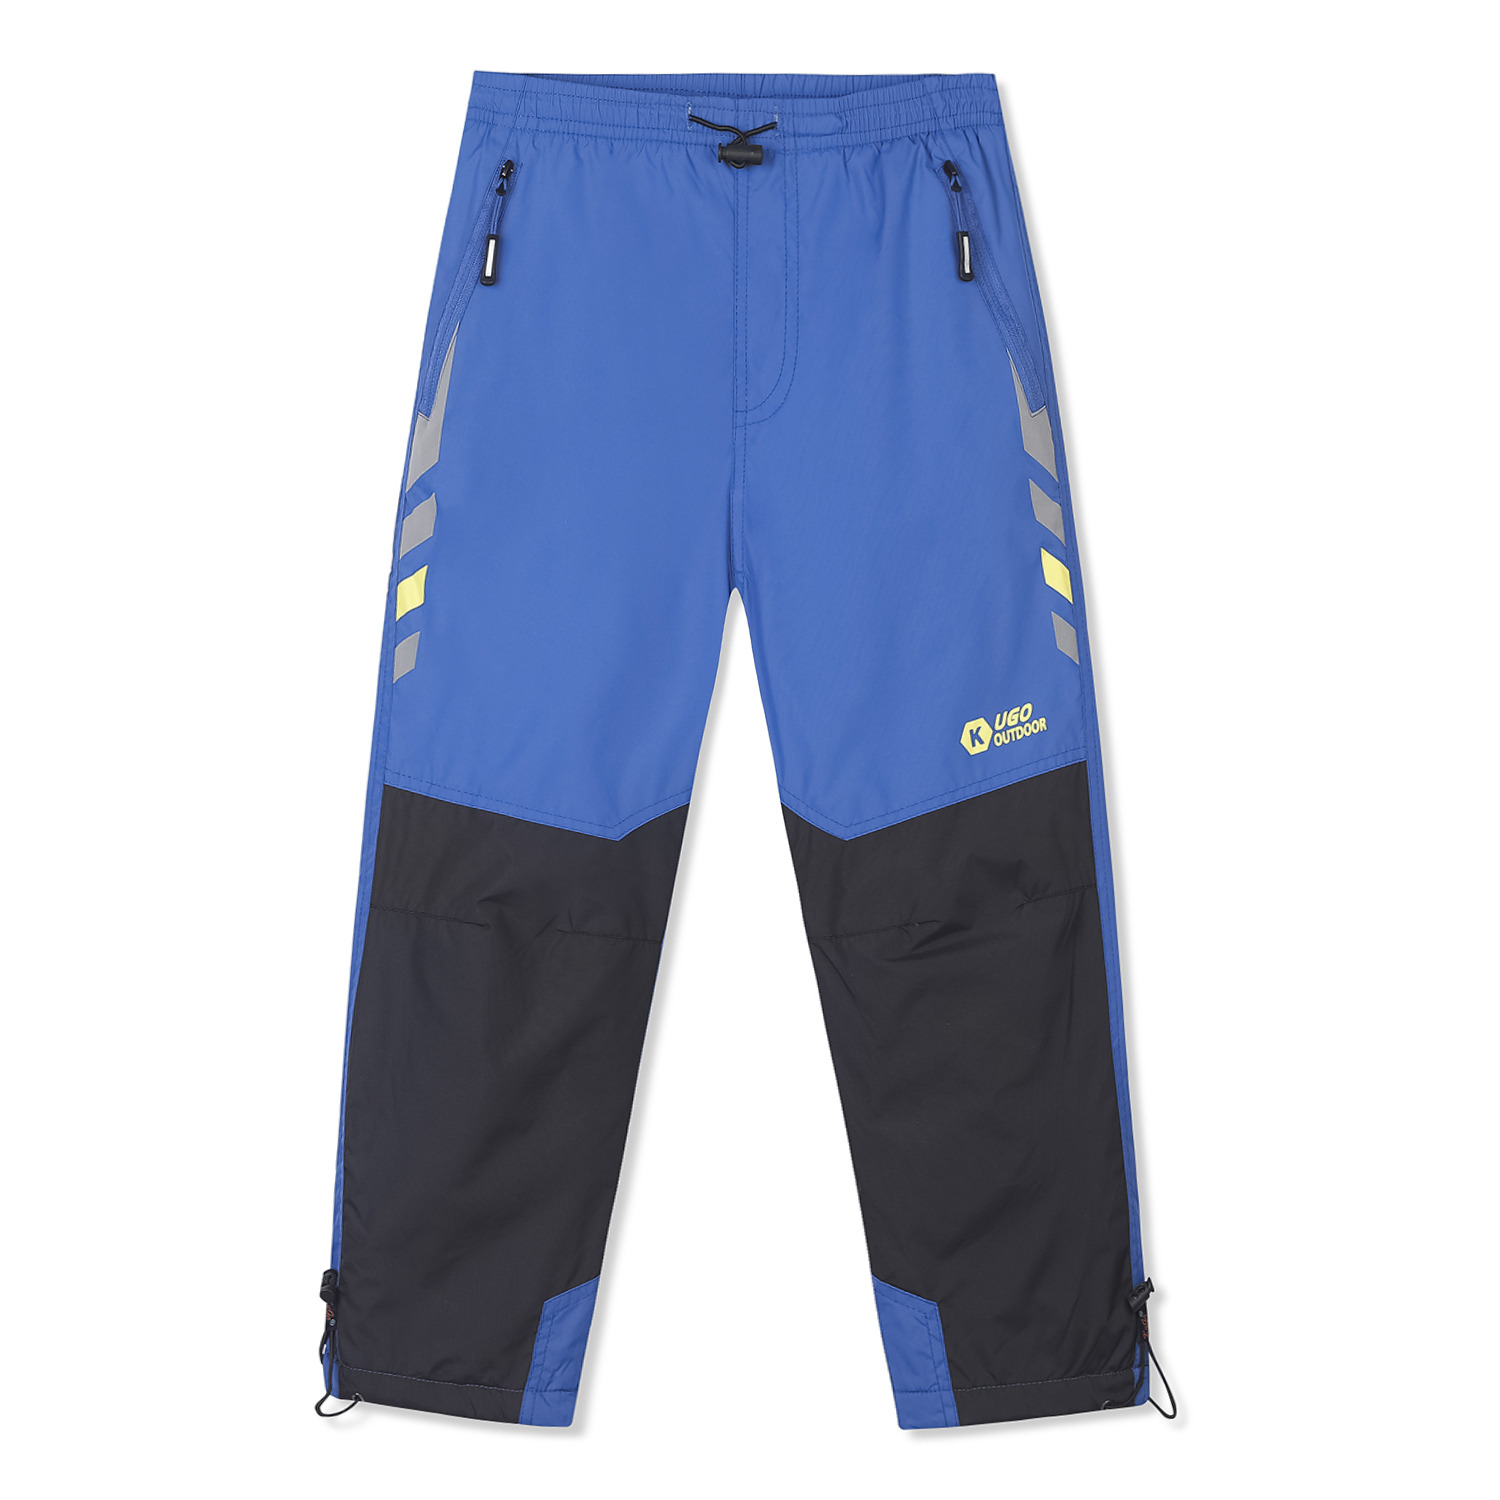 Chlapecké šusťákové kalhoty, zateplené - KUGO DK7091k, modrá Barva: Modrá, Velikost: 98